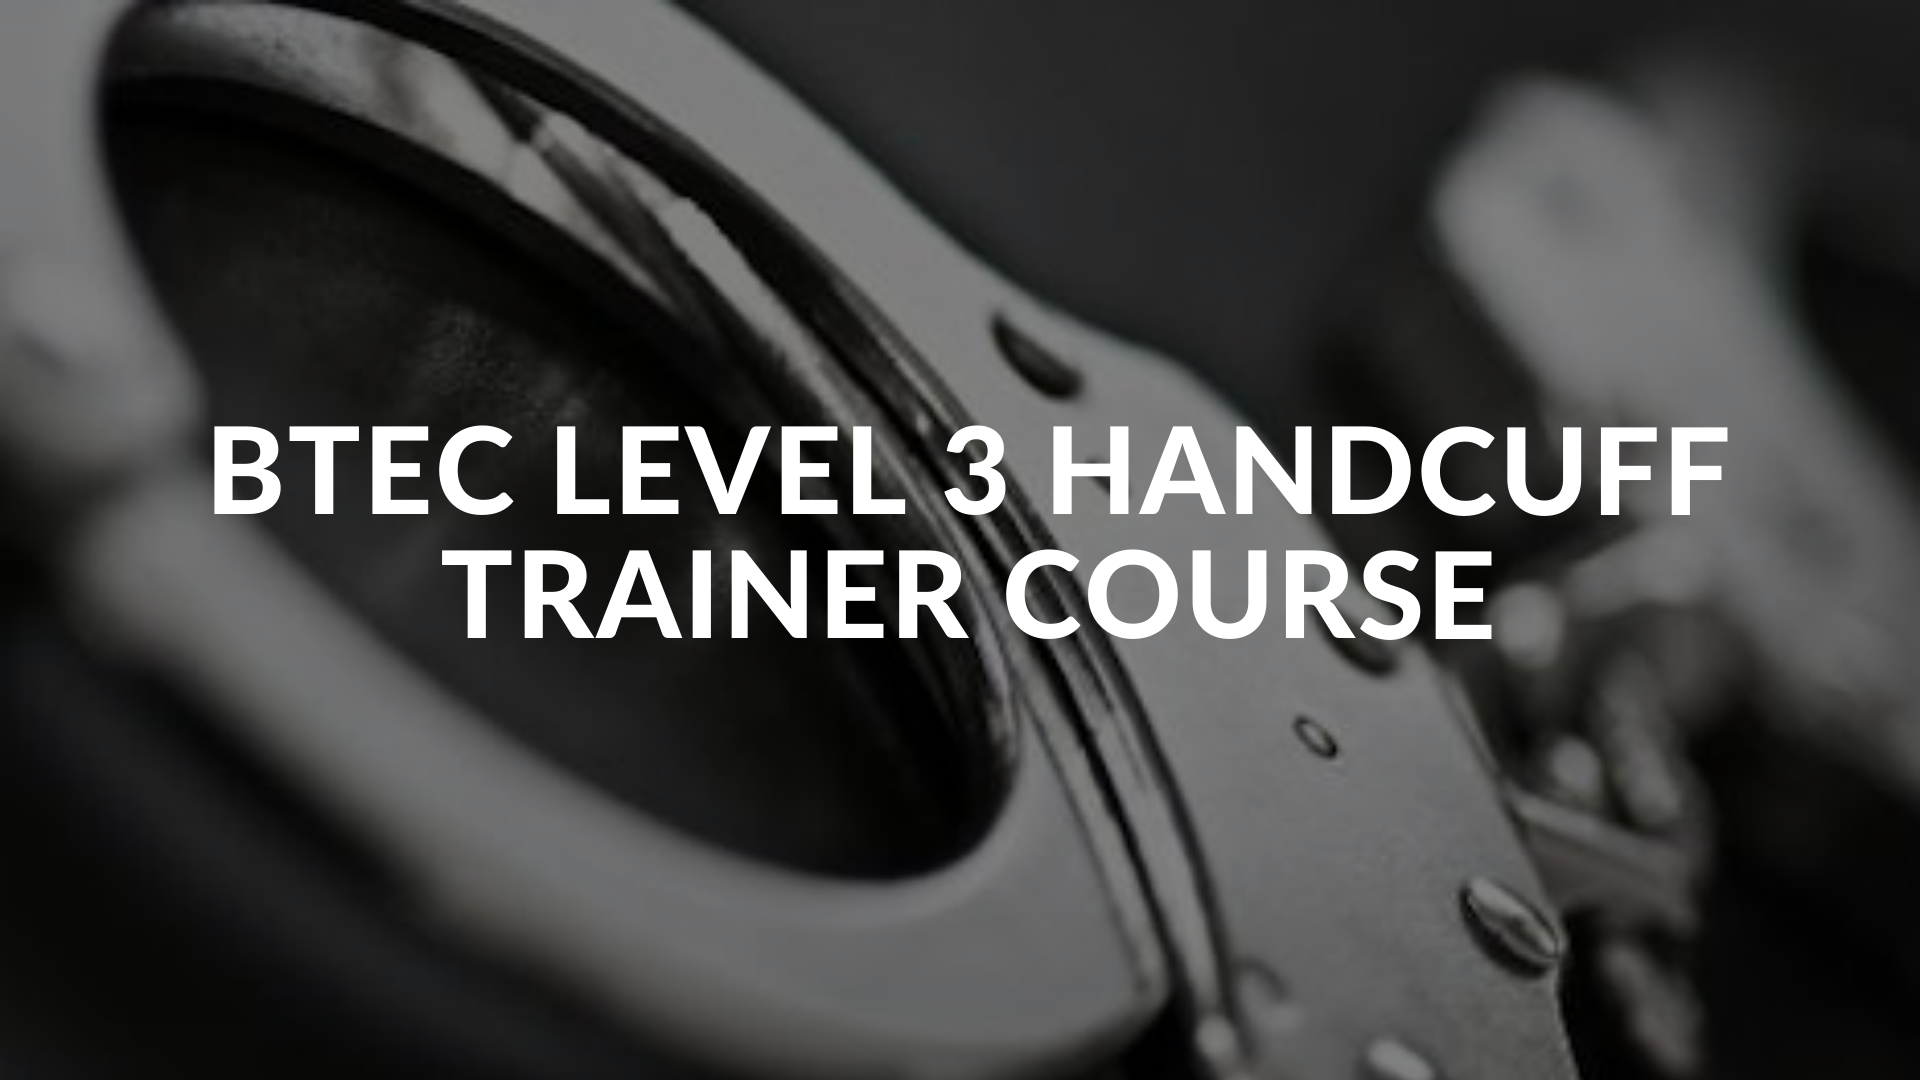 Handcuff Trainer